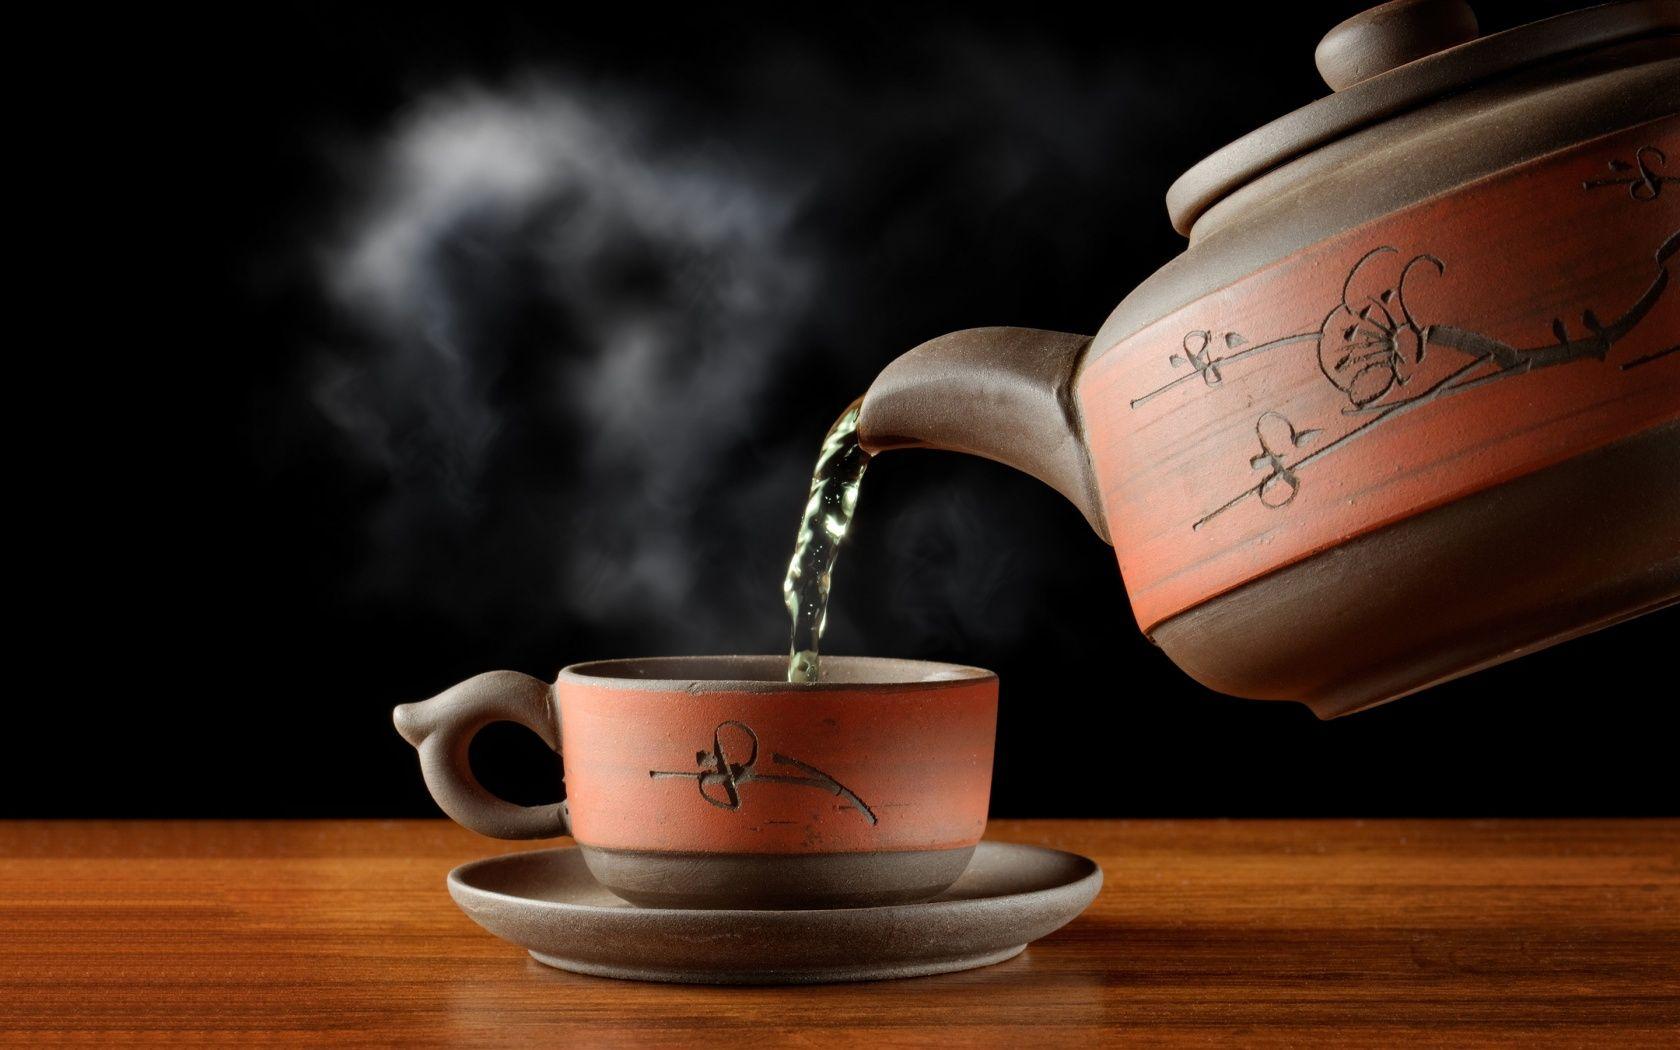 Hot Tea Cup Wallpaper, 42 Widescreen Full HD Wallpaper of Hot Tea Cup